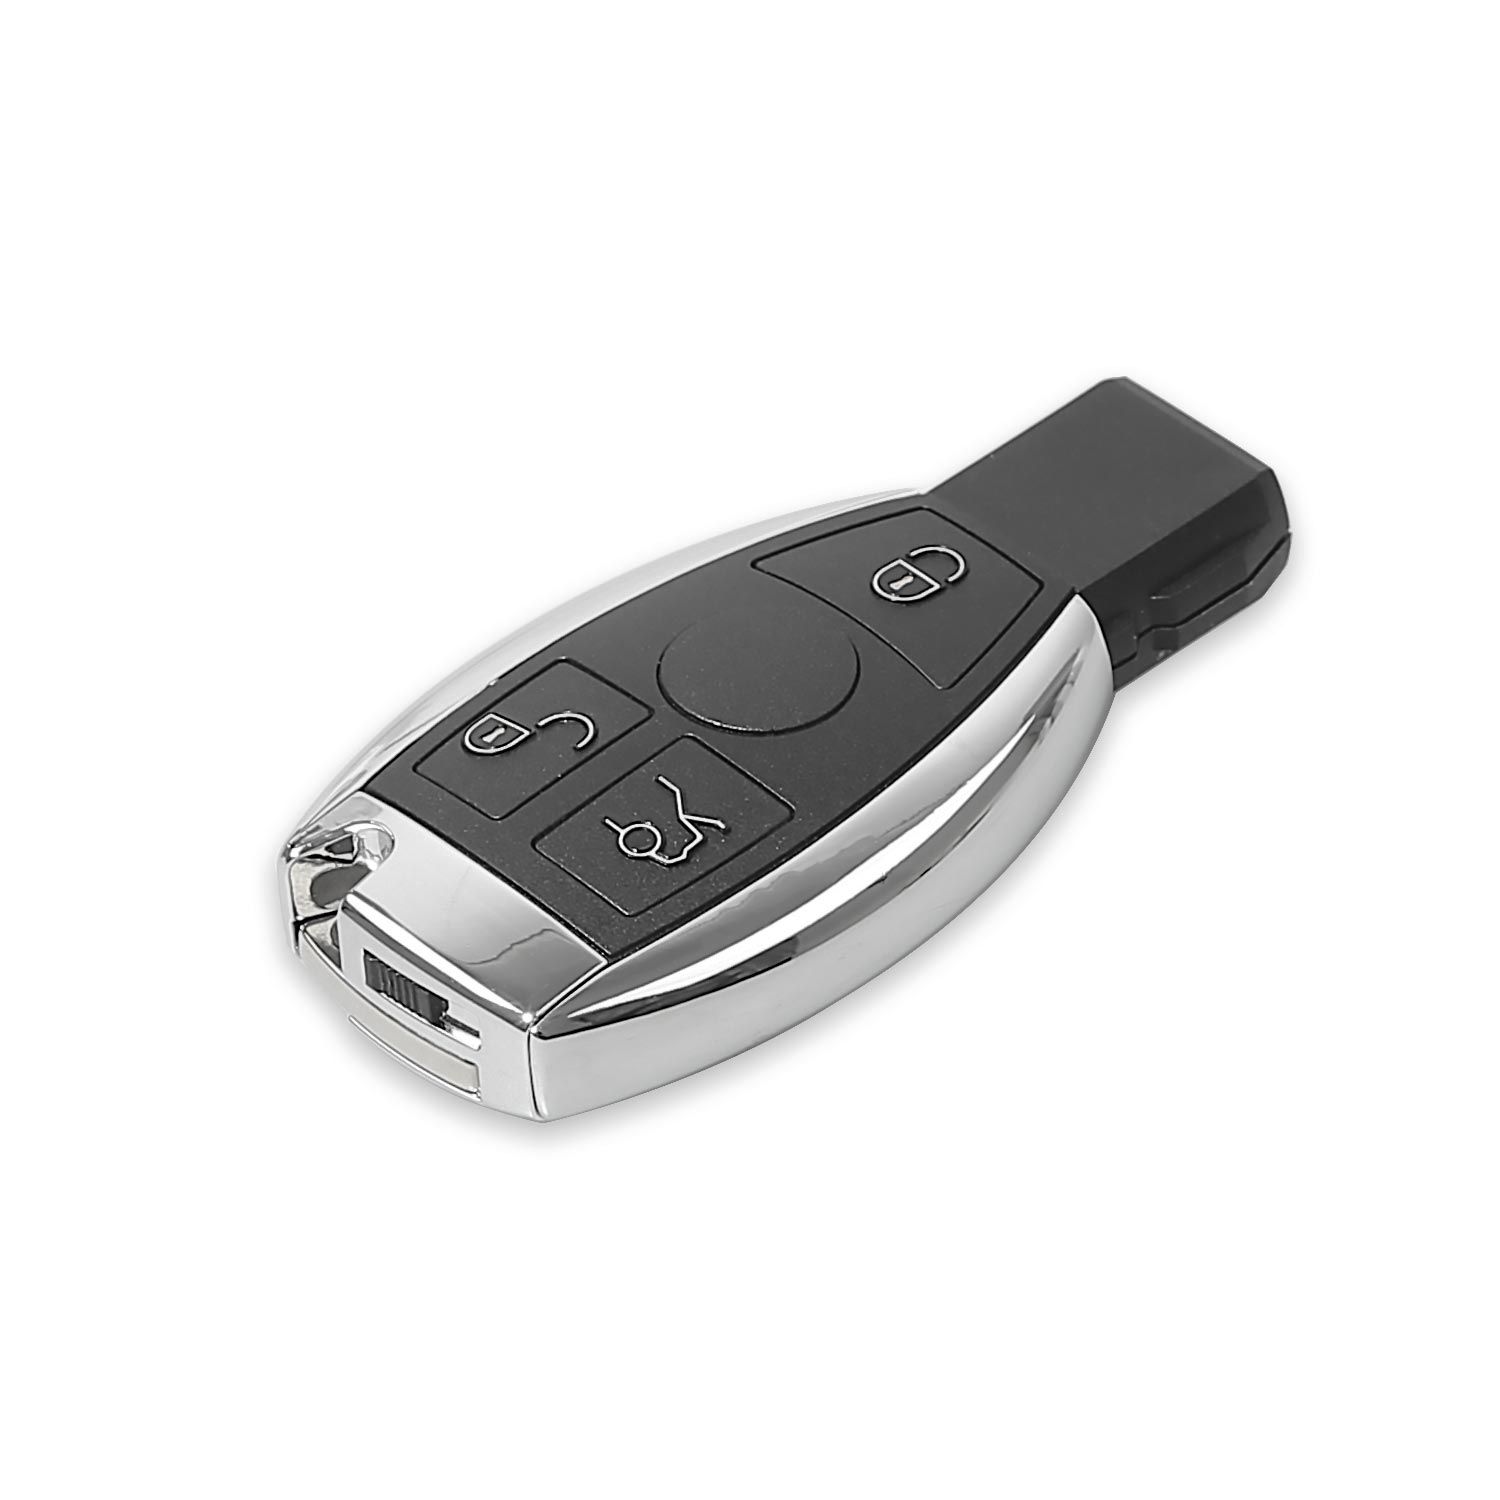 10 xhorse vvdi be Key pro SMART Key Shell Mercedes - Benz 3 botones reciben 10 tokens gratuitos de la herramienta vvdi MB